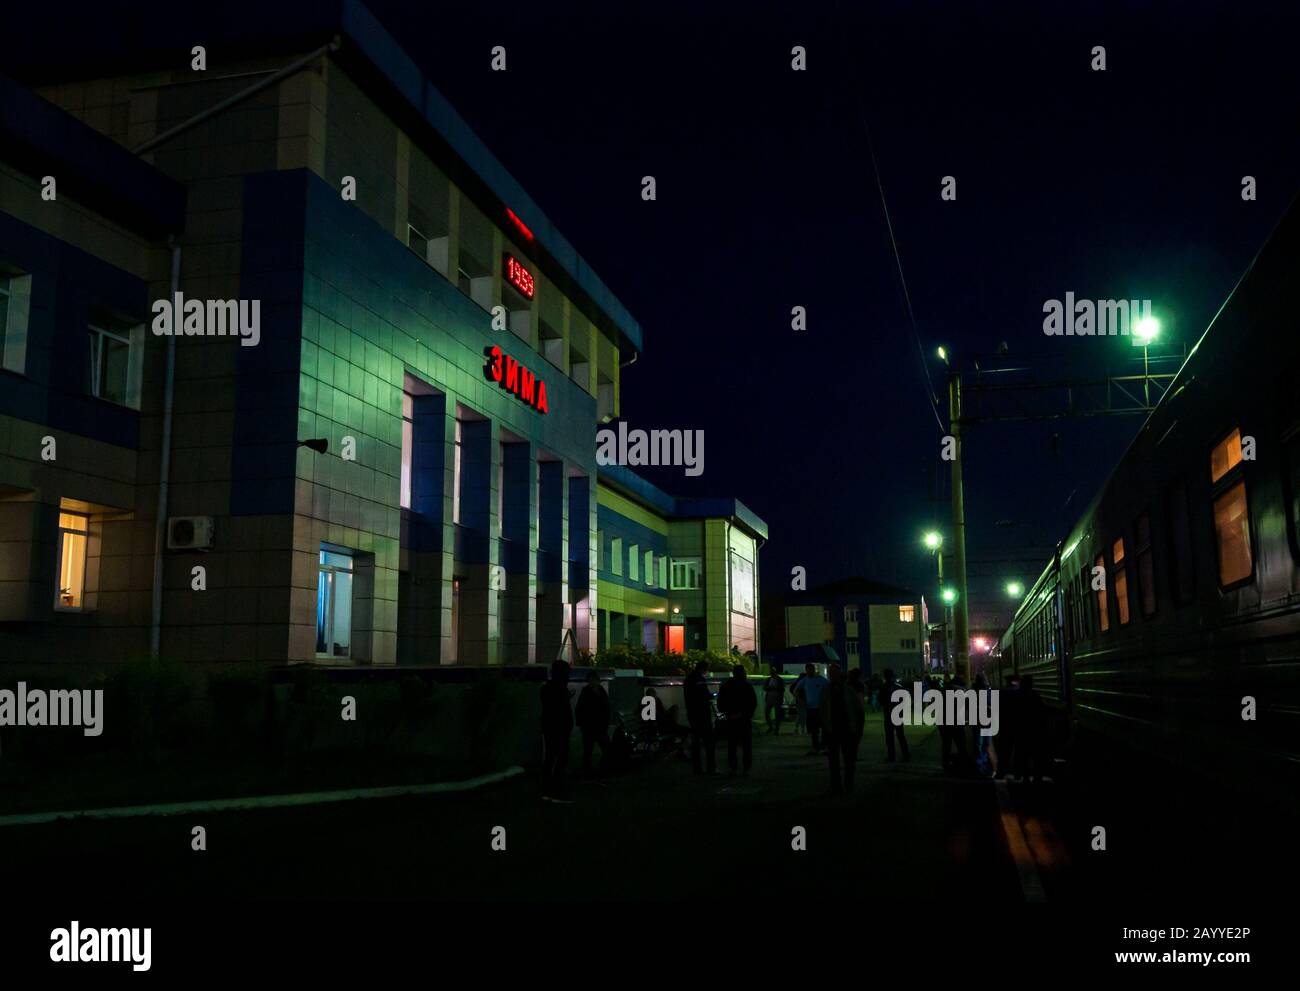 Passagers sur la plate-forme de la gare la nuit, gare de Zima, région d'Irkoutsk, route ferroviaire transsibérienne, Sibérie, Fédération de Russie Banque D'Images